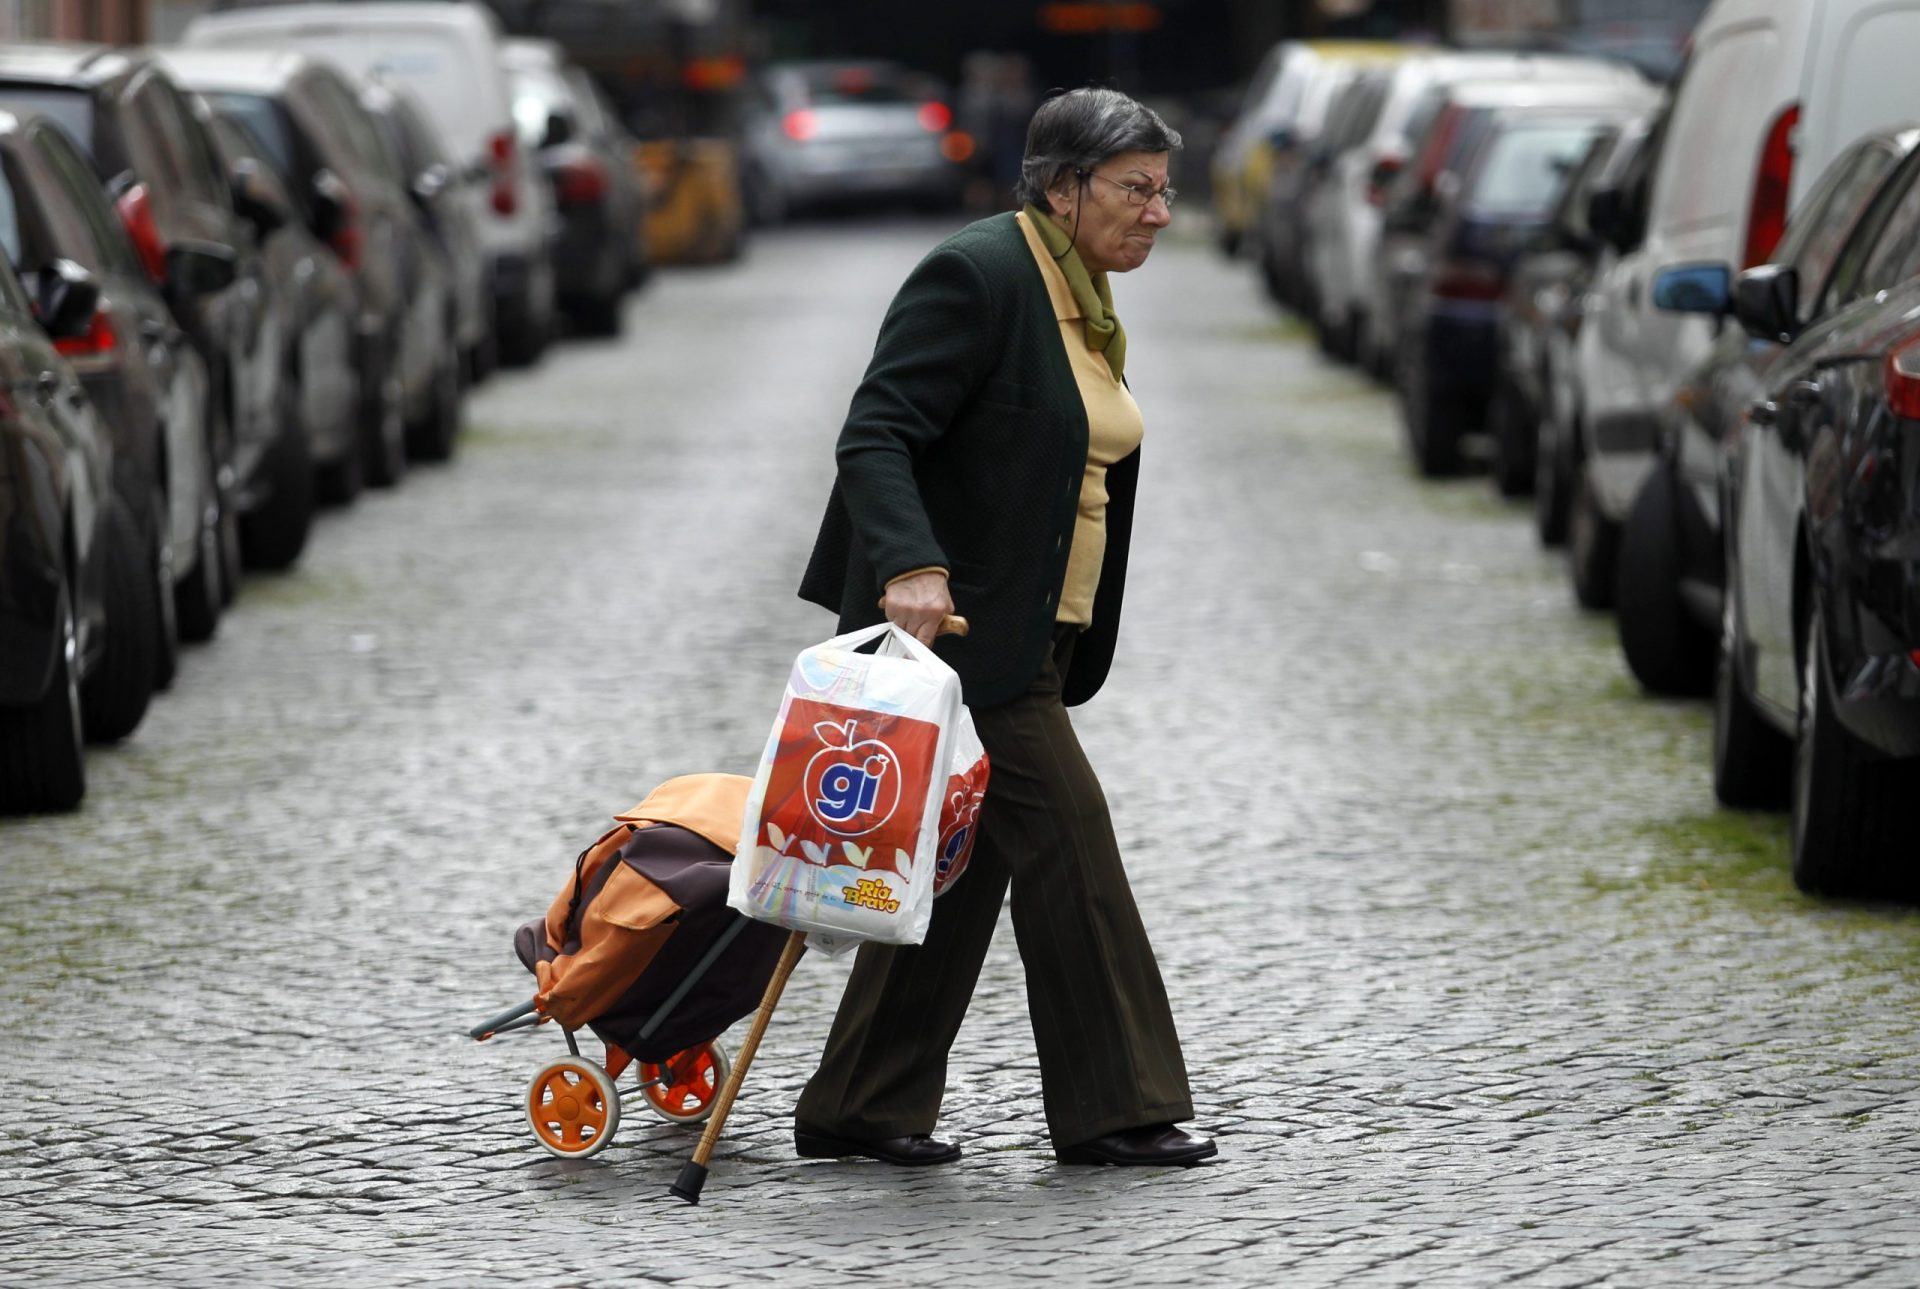 Crise obriga idosos portugueses a recorrerem aos Médicos do Mundo